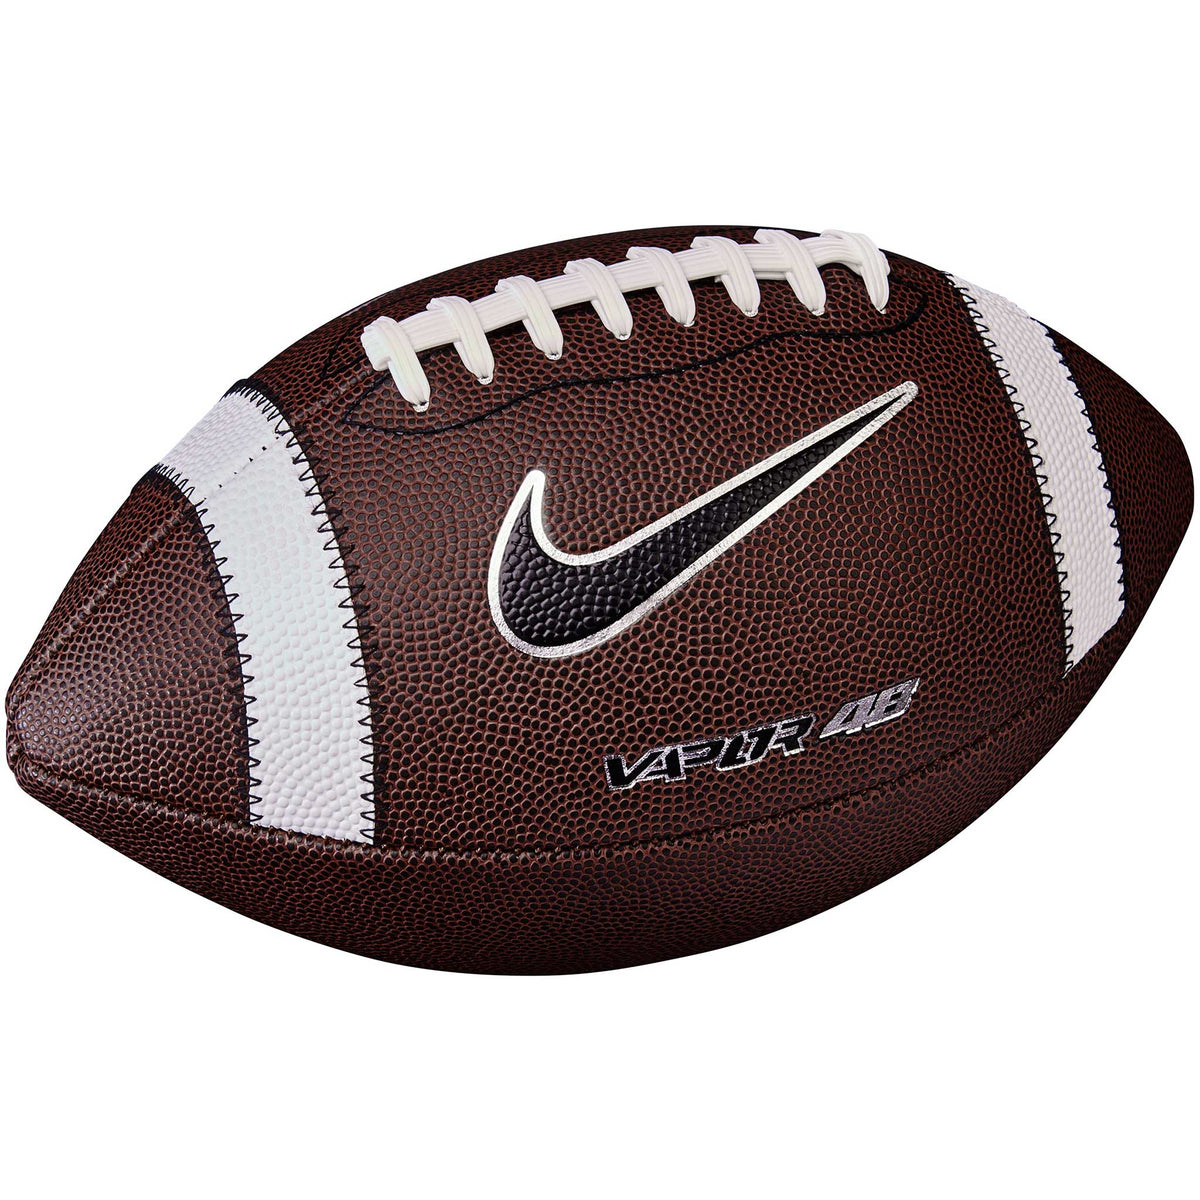 Nike Vapor 48 2.0 ballon de football - Brown / White / Metallic Silver